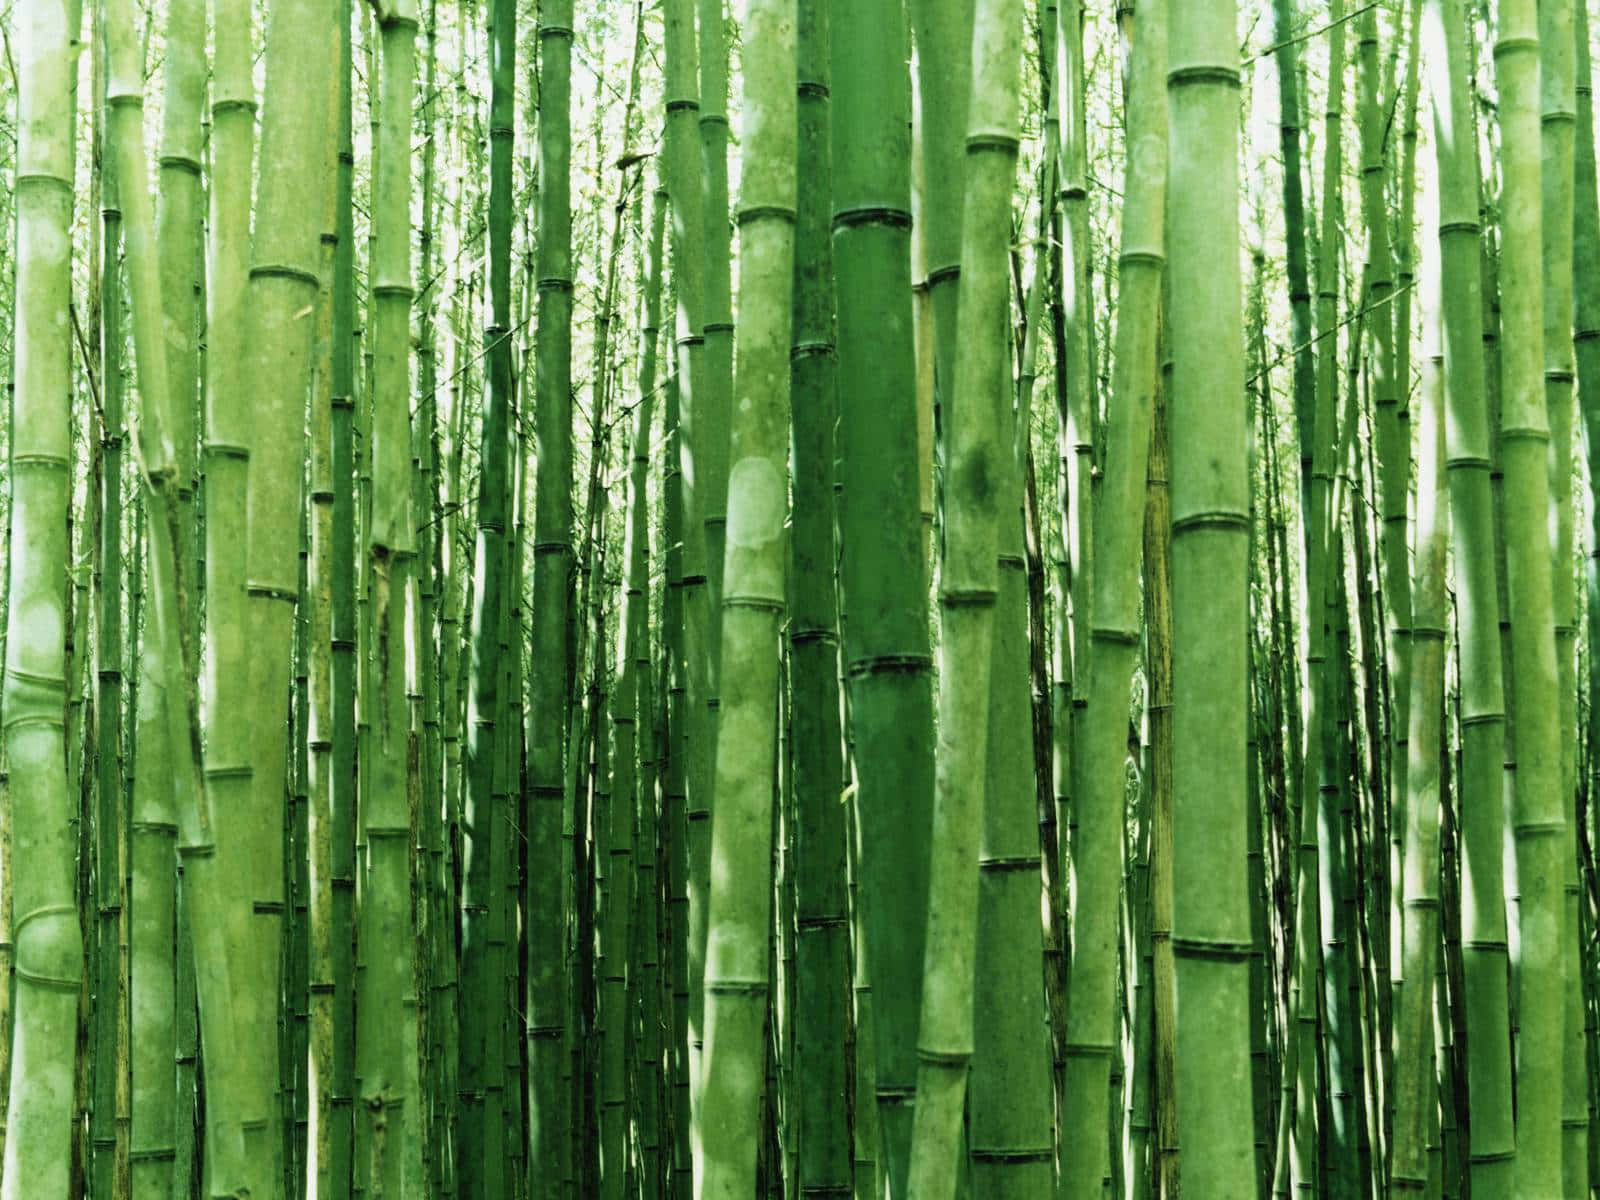 Bosquede Bambú - Bosque De Bambú - Bosque De Bambú - Bosque De Bambú Fondo de pantalla